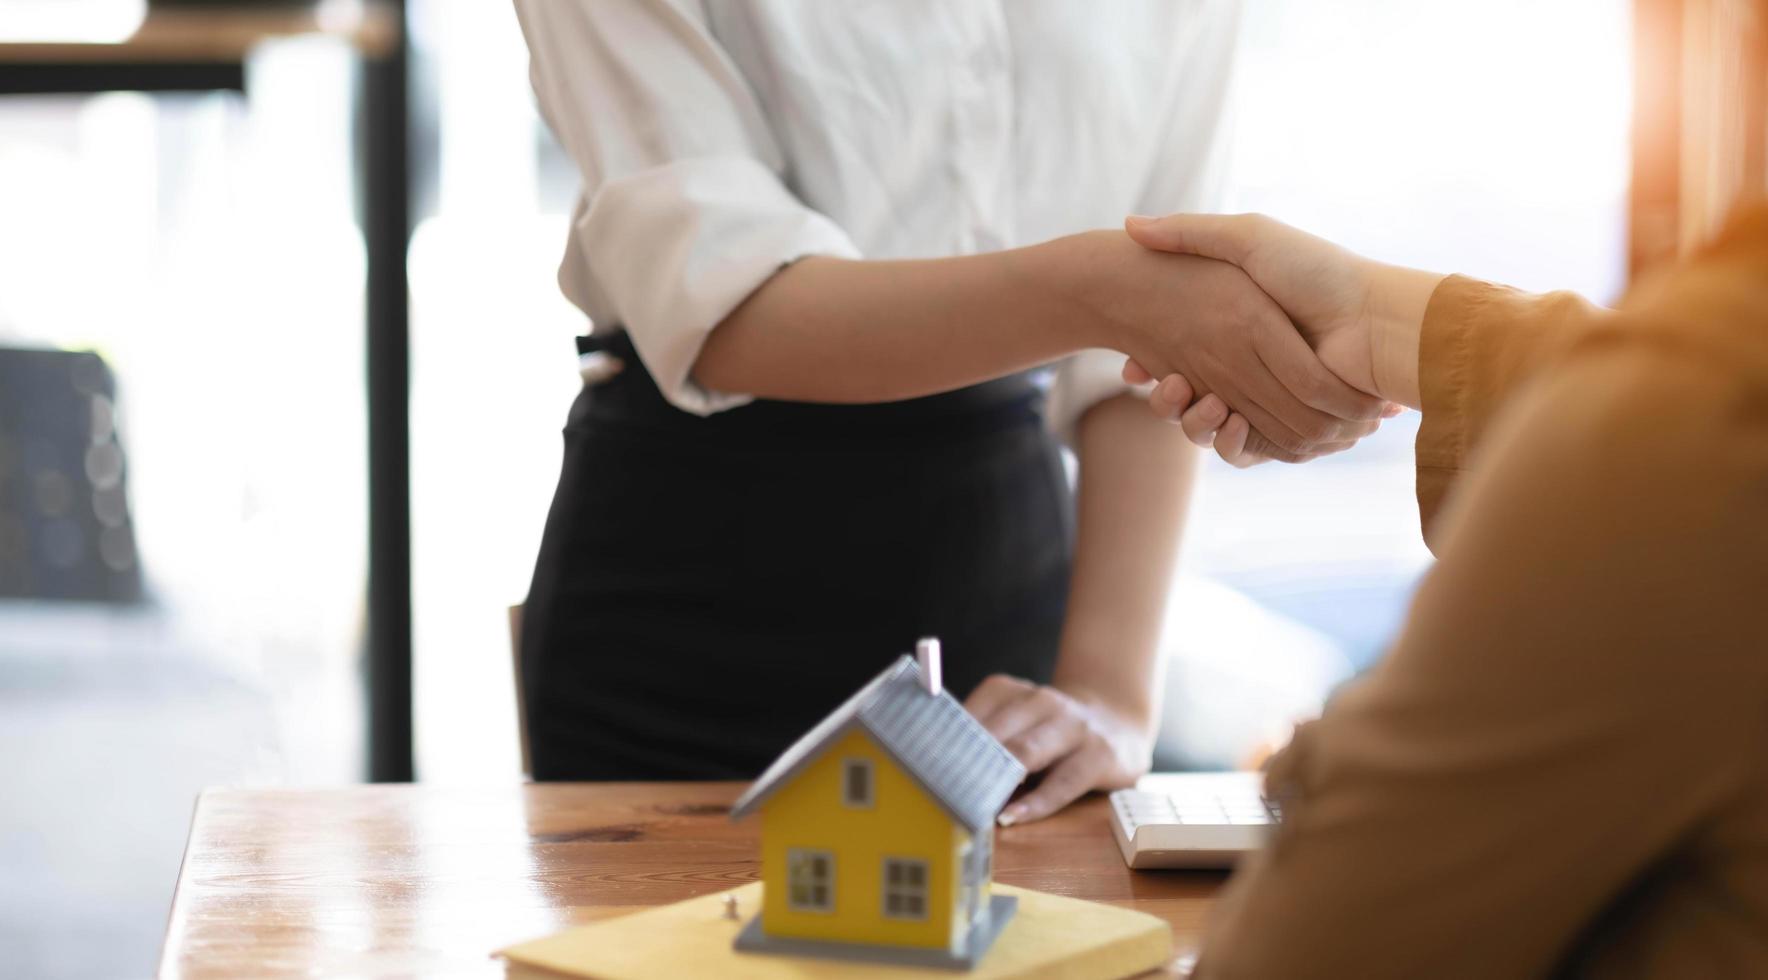 les agents immobiliers et les clients se serrent la main pour féliciter d'avoir signé un contrat pour acheter une maison avec terrain et assurance, poignée de main et bon concept de réponse. photo